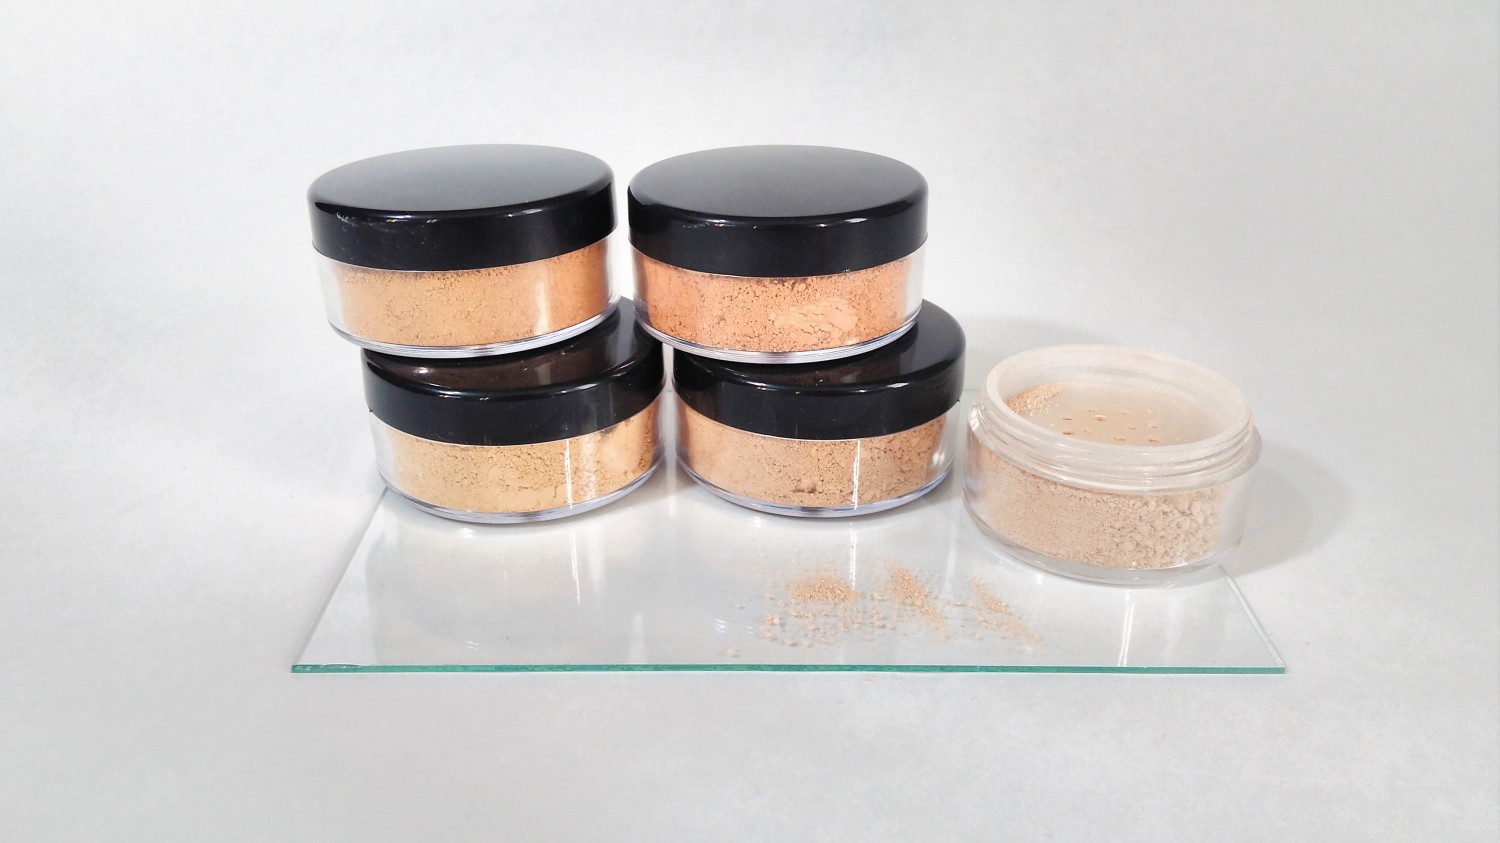 Práškový minerálny makeup v rôznych odtieňoch pleti leží v plastových kelímkoch na bielom pozadí.